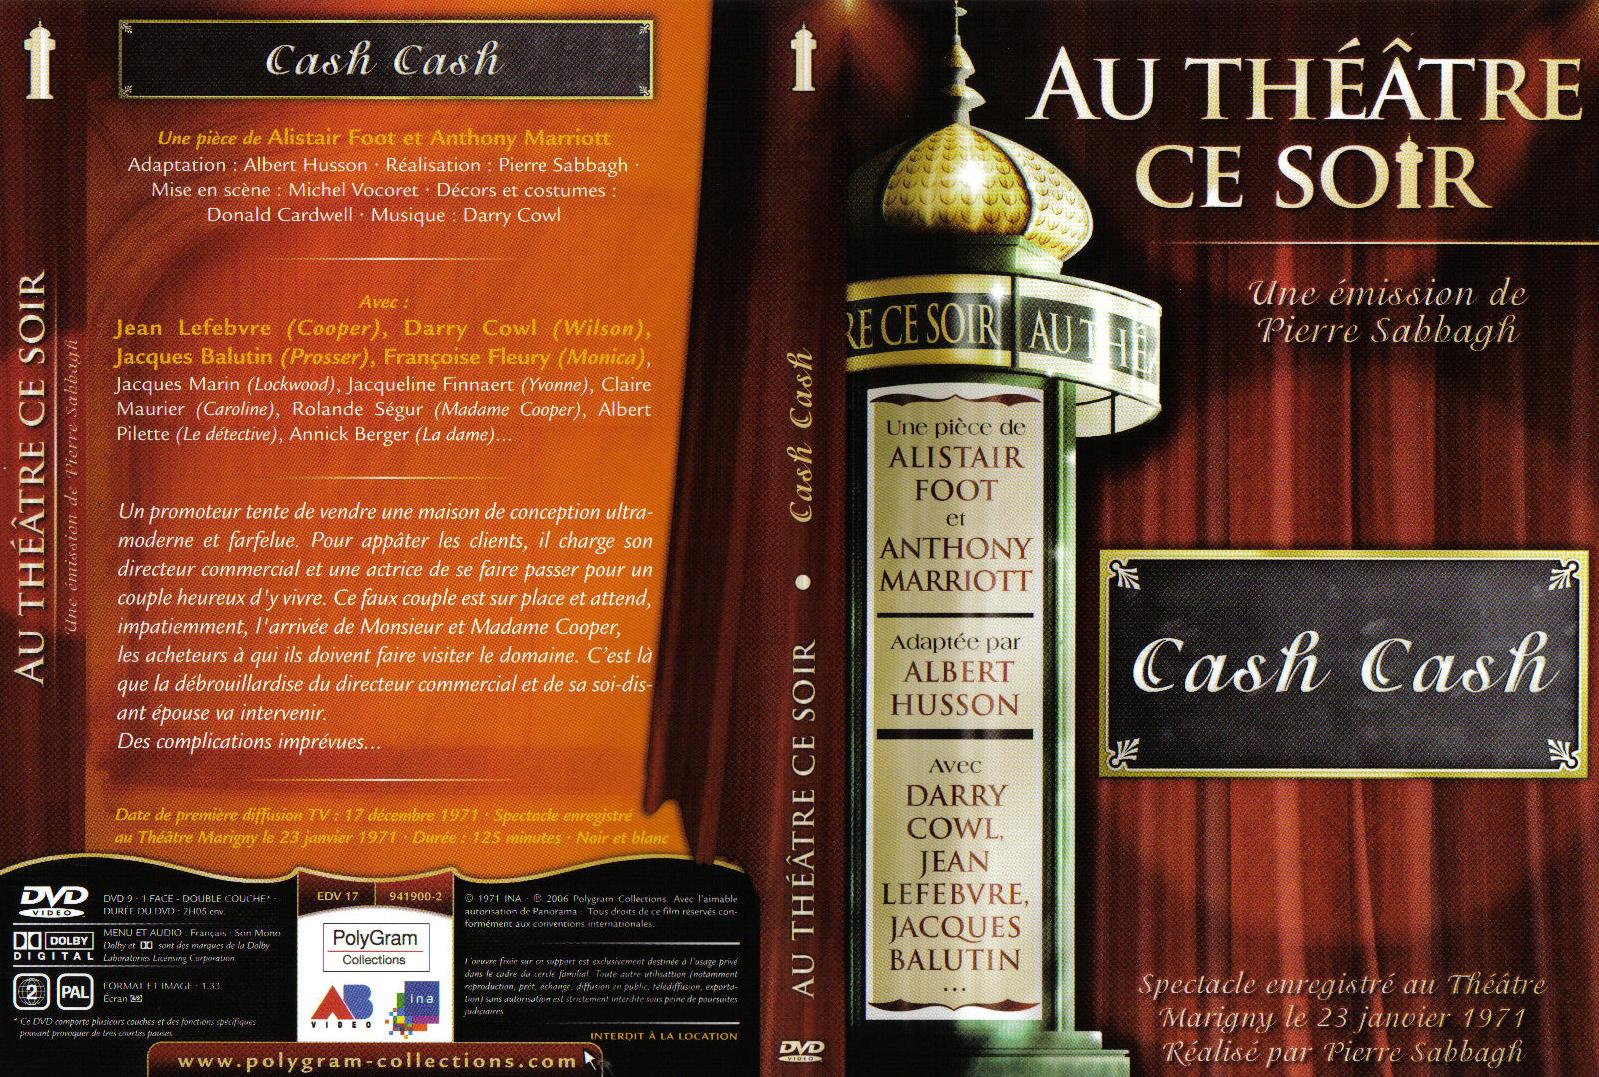 Jaquette DVD Au thatre ce soir - Cash Cash